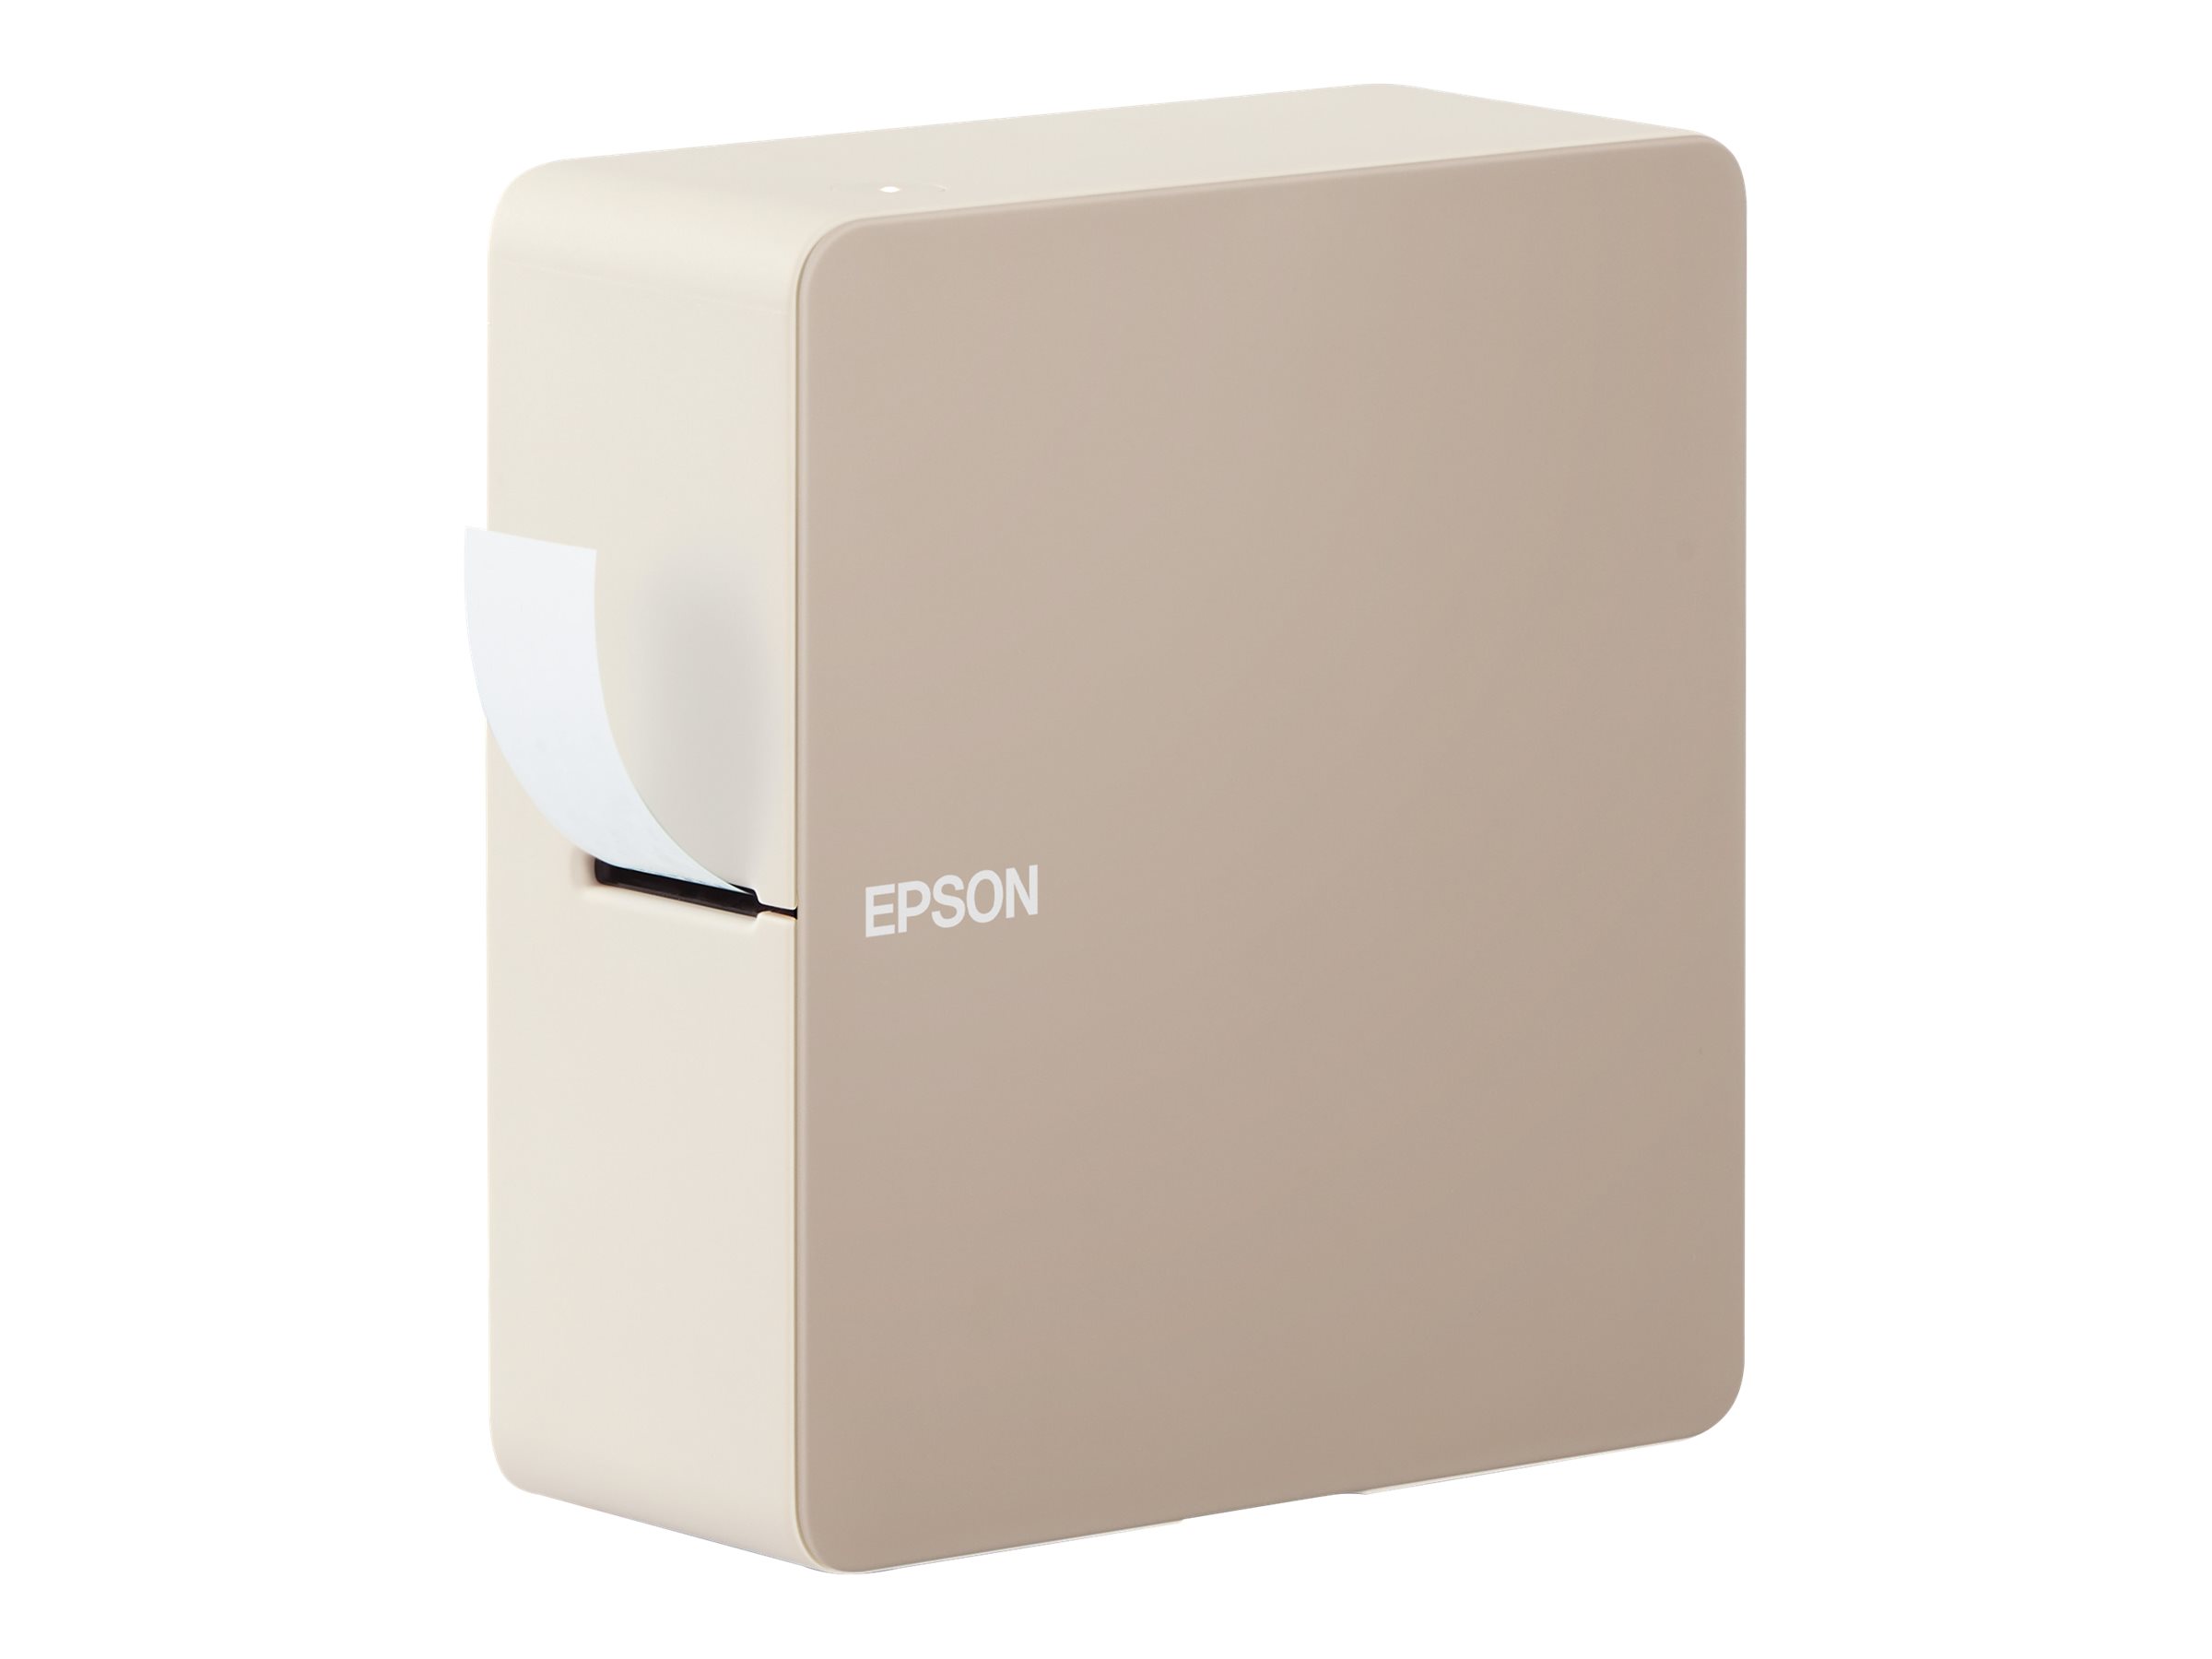 Epson LabelWorks LW-C610 - Imprimante d'étiquettes - transfert thermique - Rouleau (2,4 cm) - 360 dpi - jusqu'à 12 mm/sec - Bluetooth - outil de coupe - C51CK34100 - Imprimantes thermiques